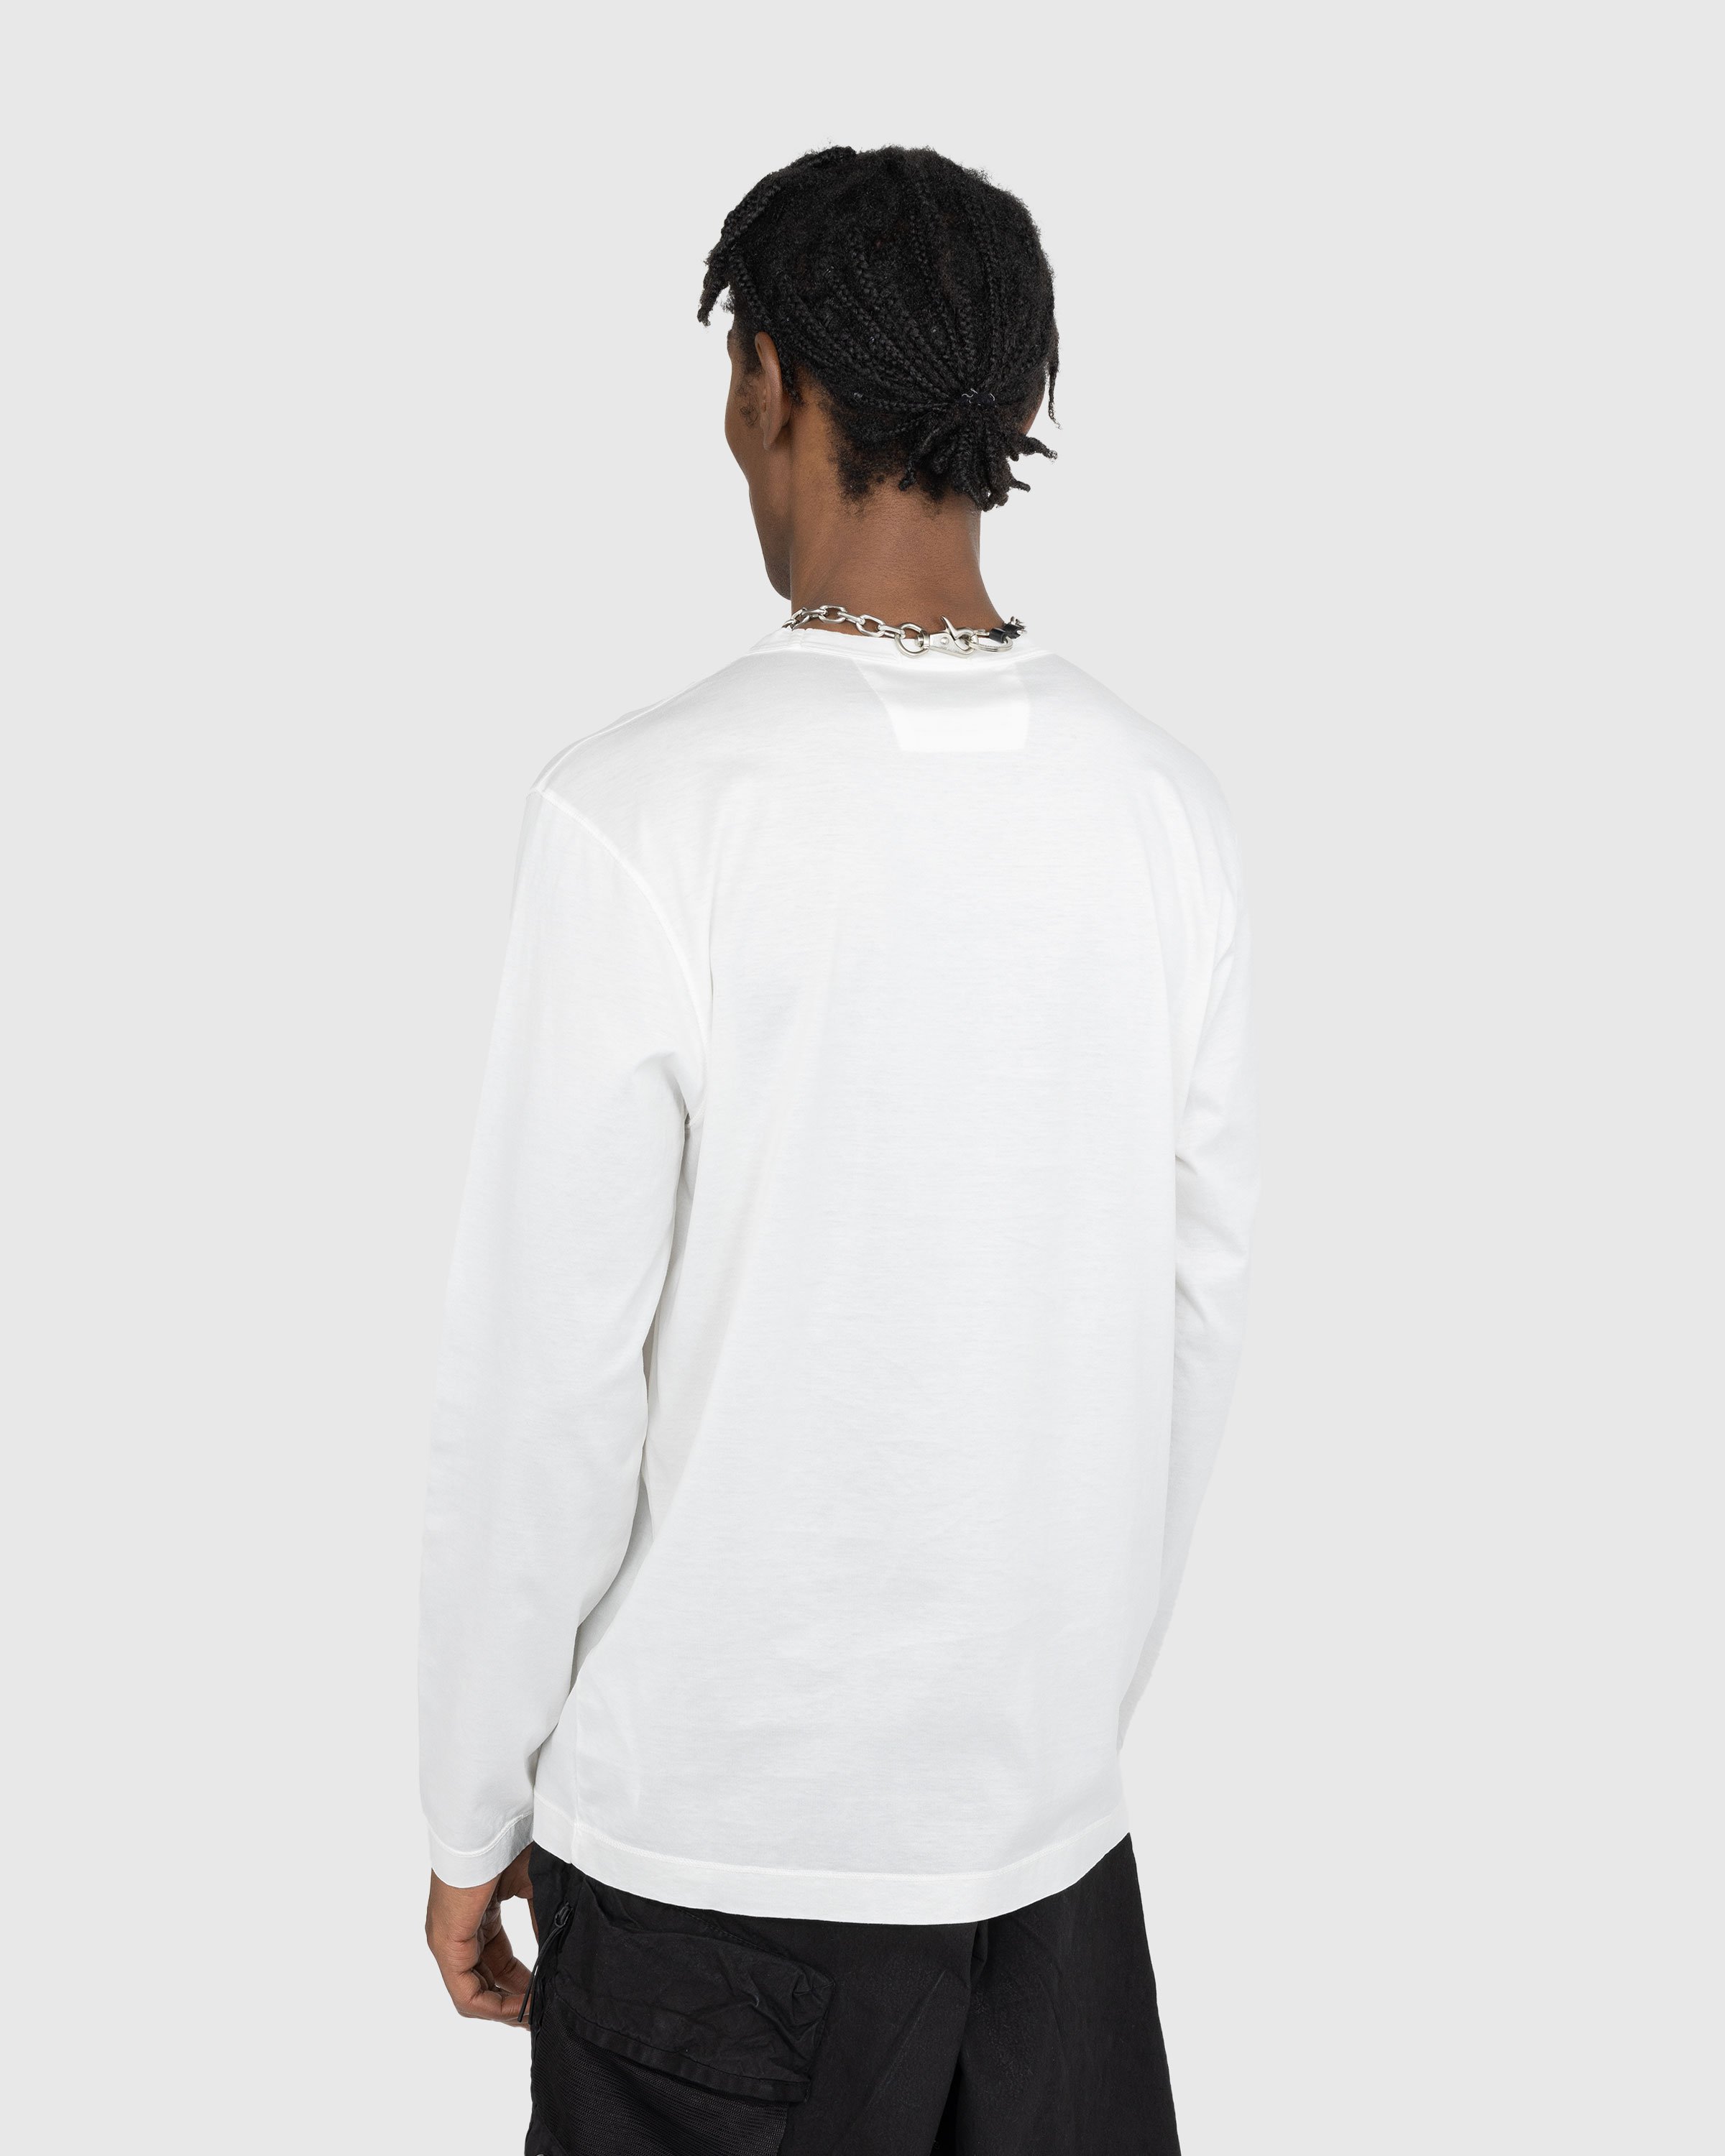 C.P. Company - T-Shirts - Long Sleeve - Clothing - White - Image 3